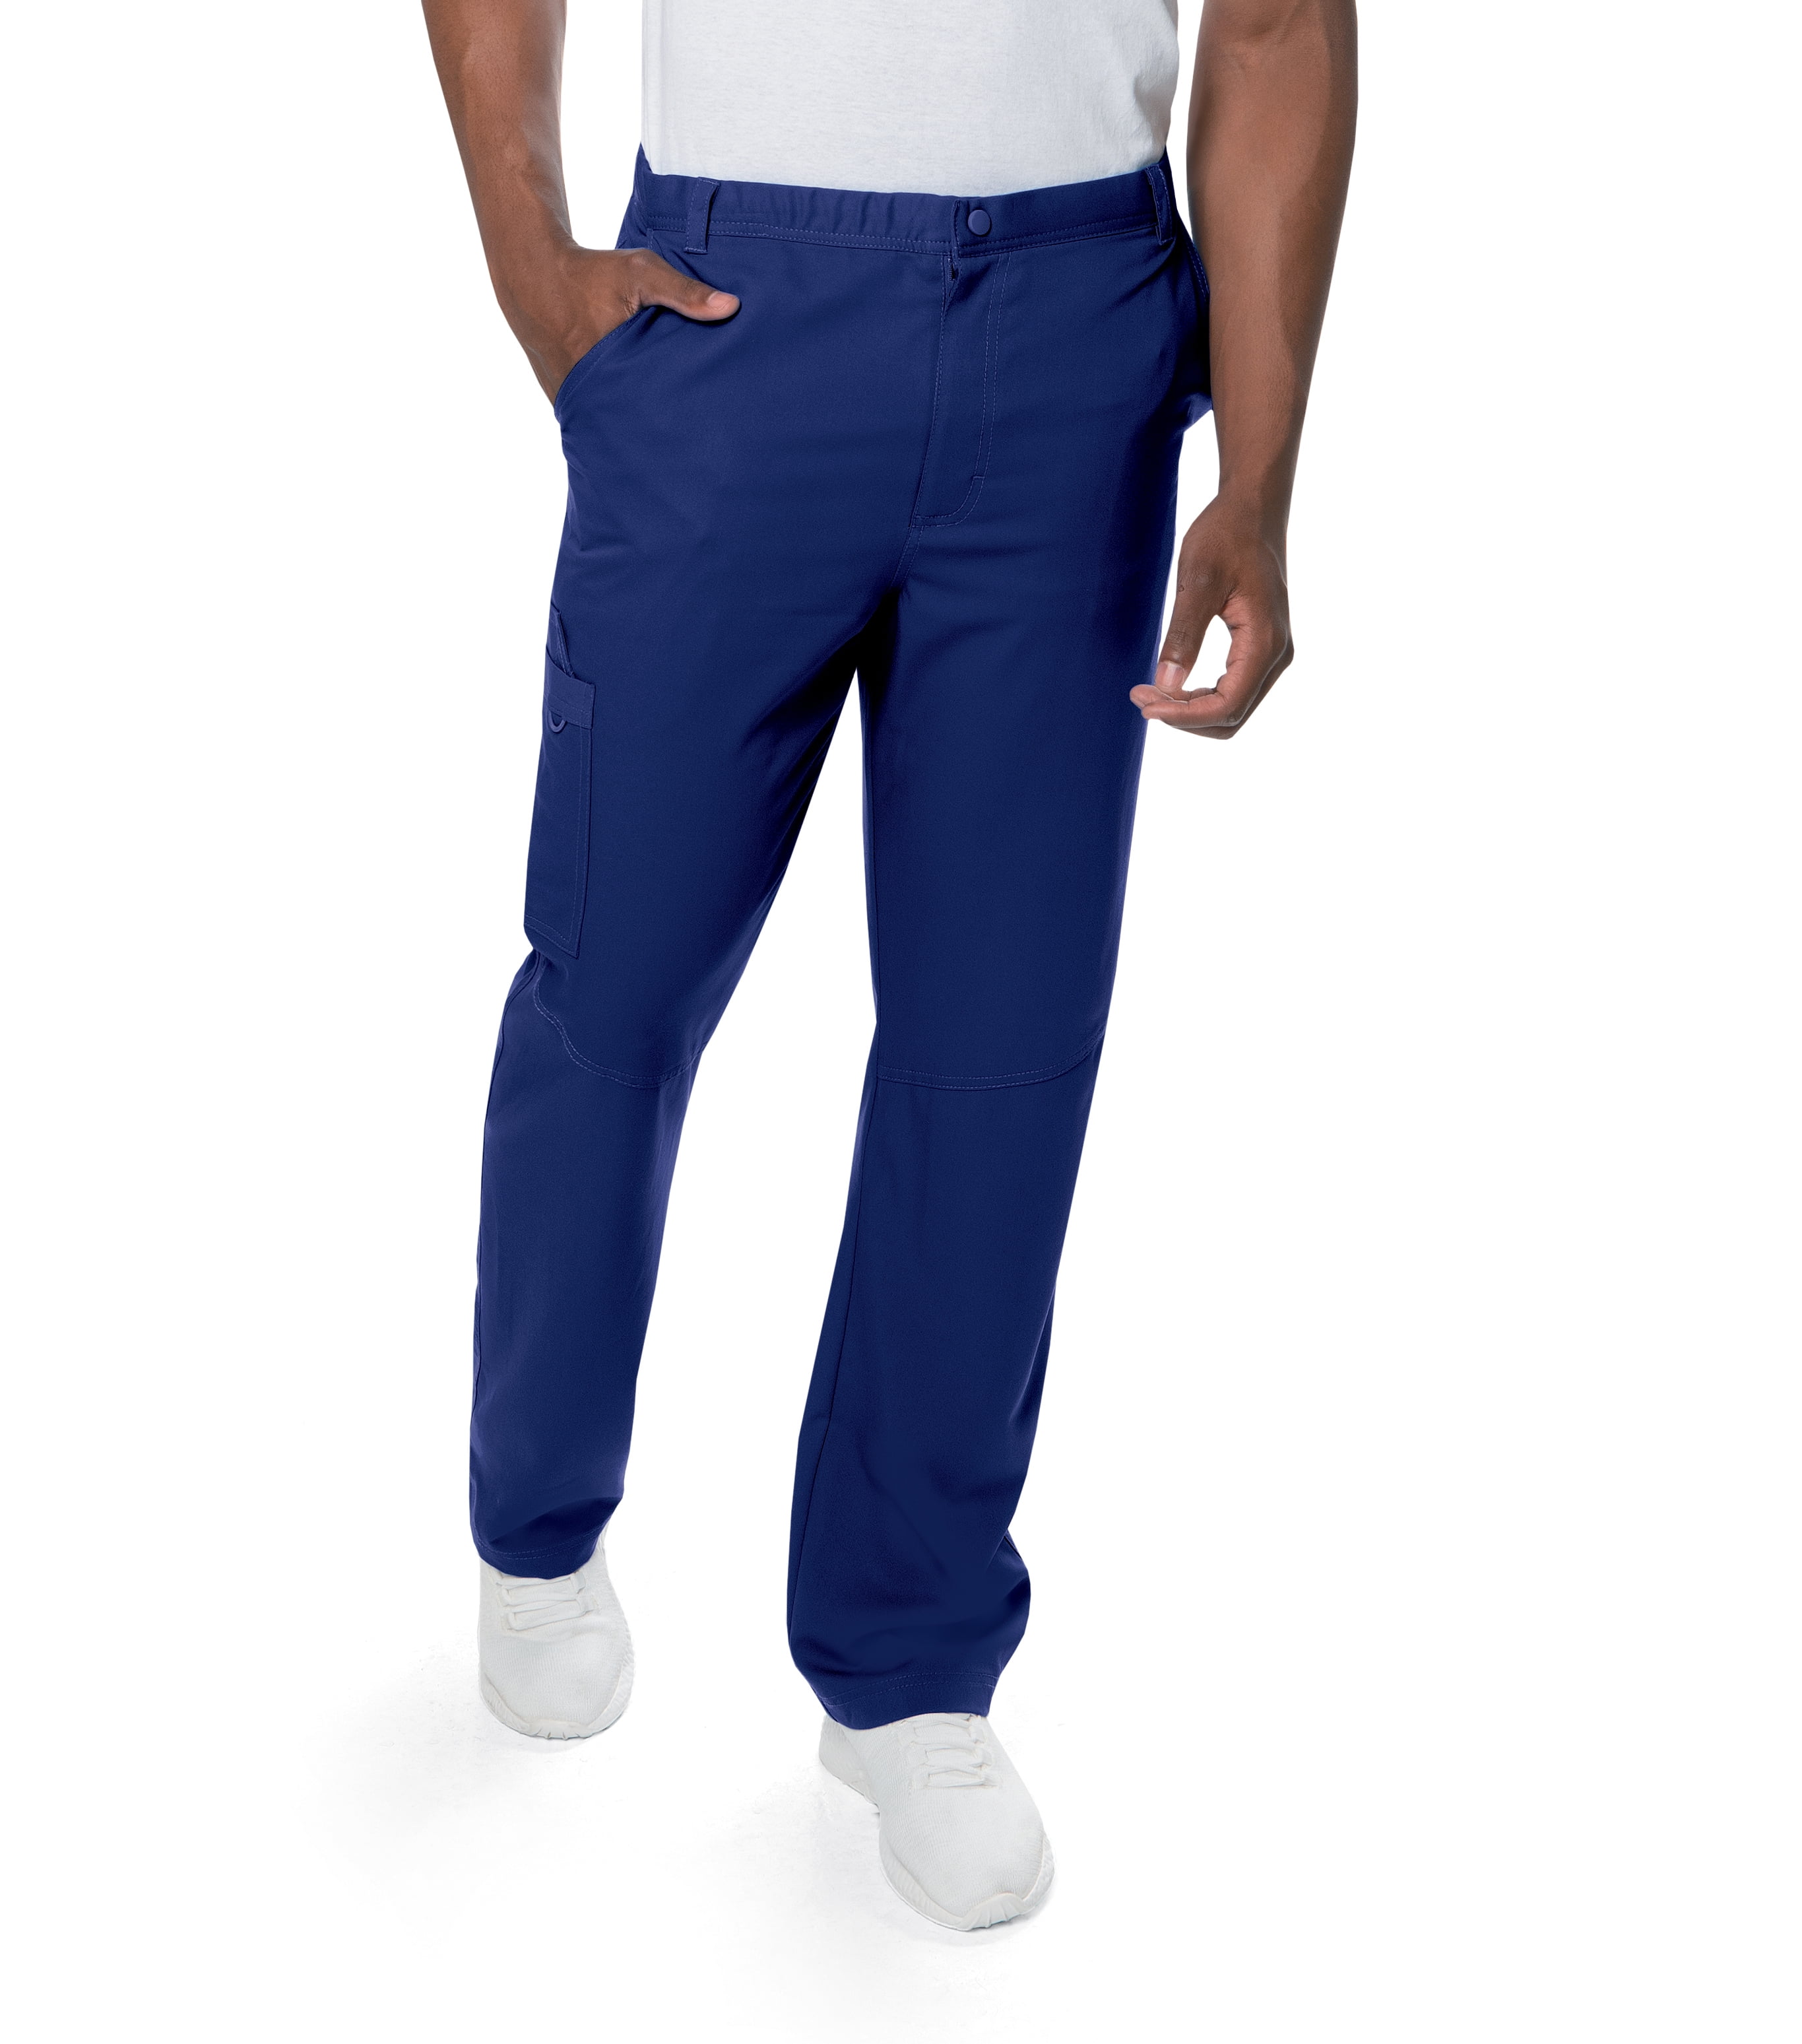 Urbane Ultimate Elastic Waist 7 Pocket Scrub Pants for Men's: Modern ...